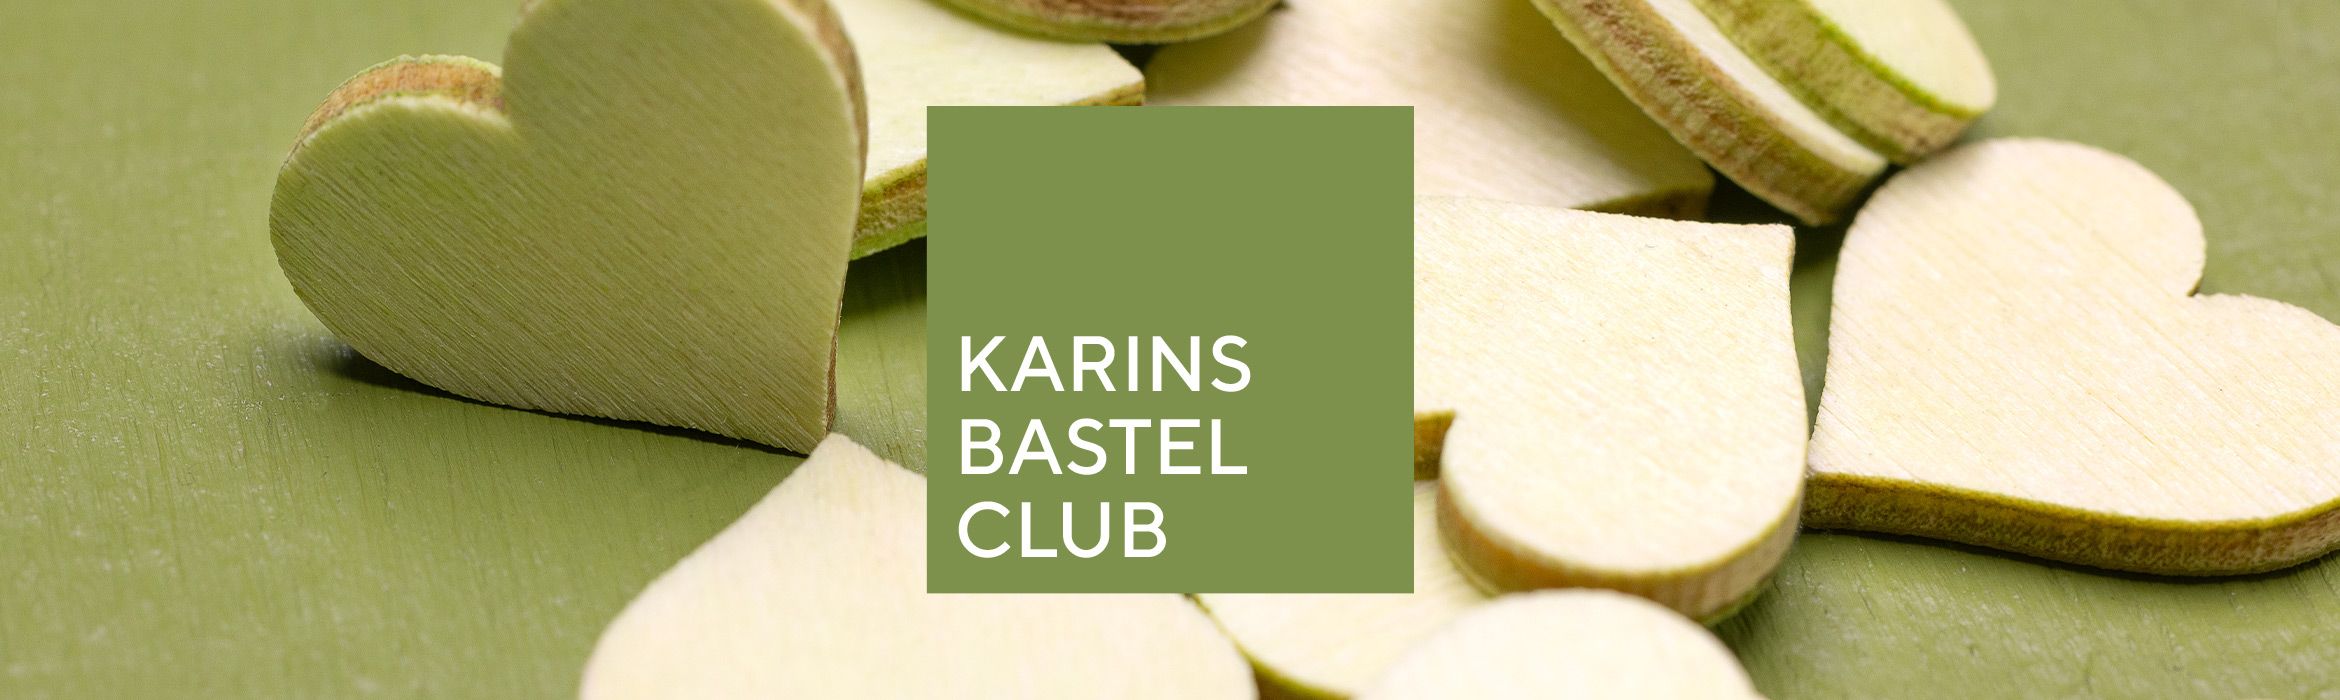 Karins Bastelclub